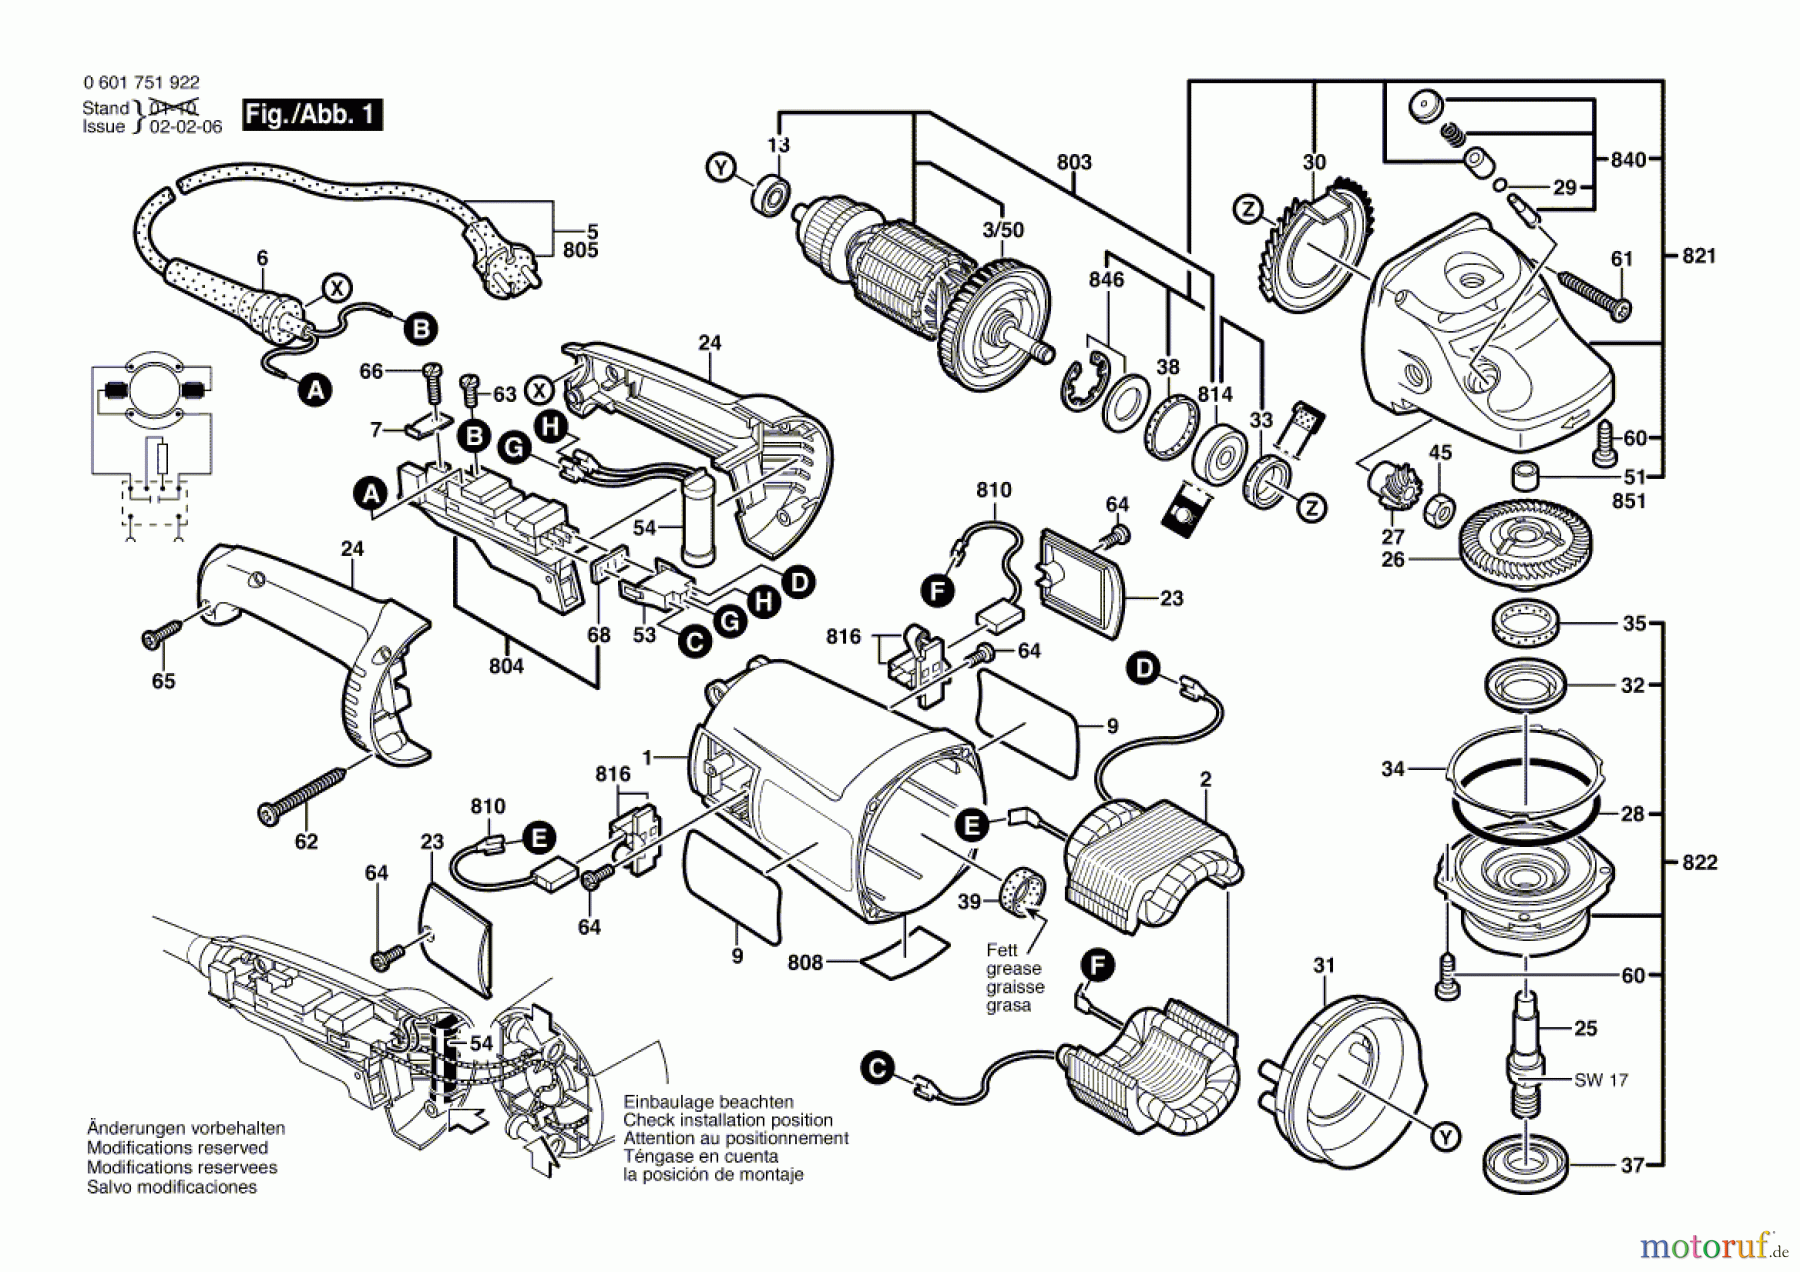  Bosch Werkzeug Winkelschleifer GWS 2000-18 J Seite 1